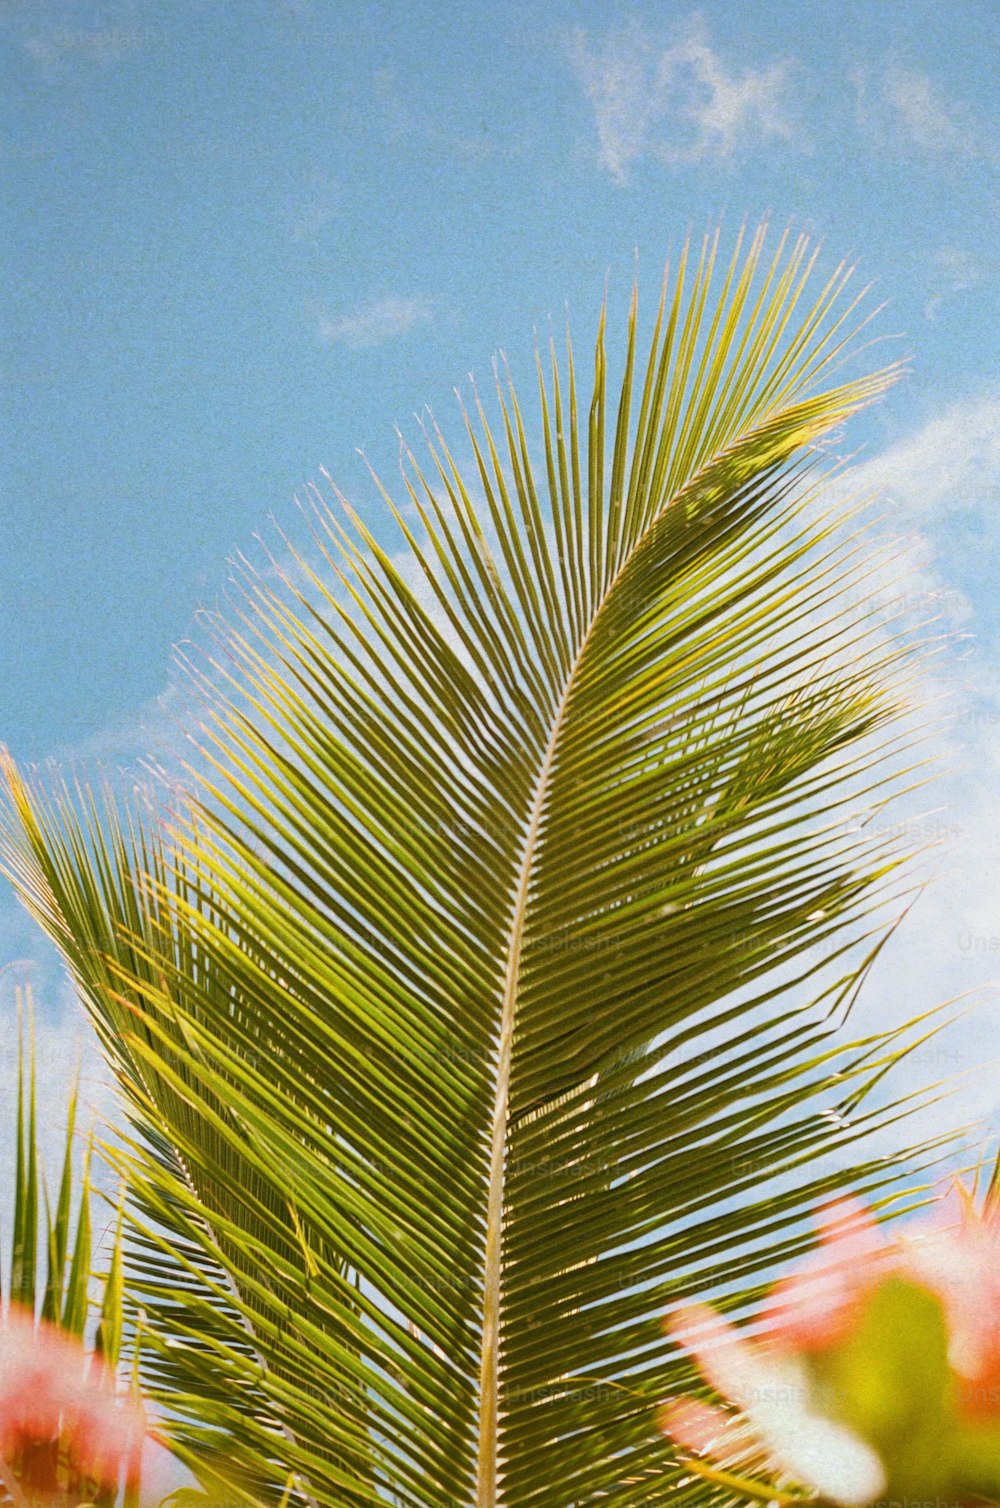 Nahaufnahme einer Palme mit blauem Himmel im Hintergrund